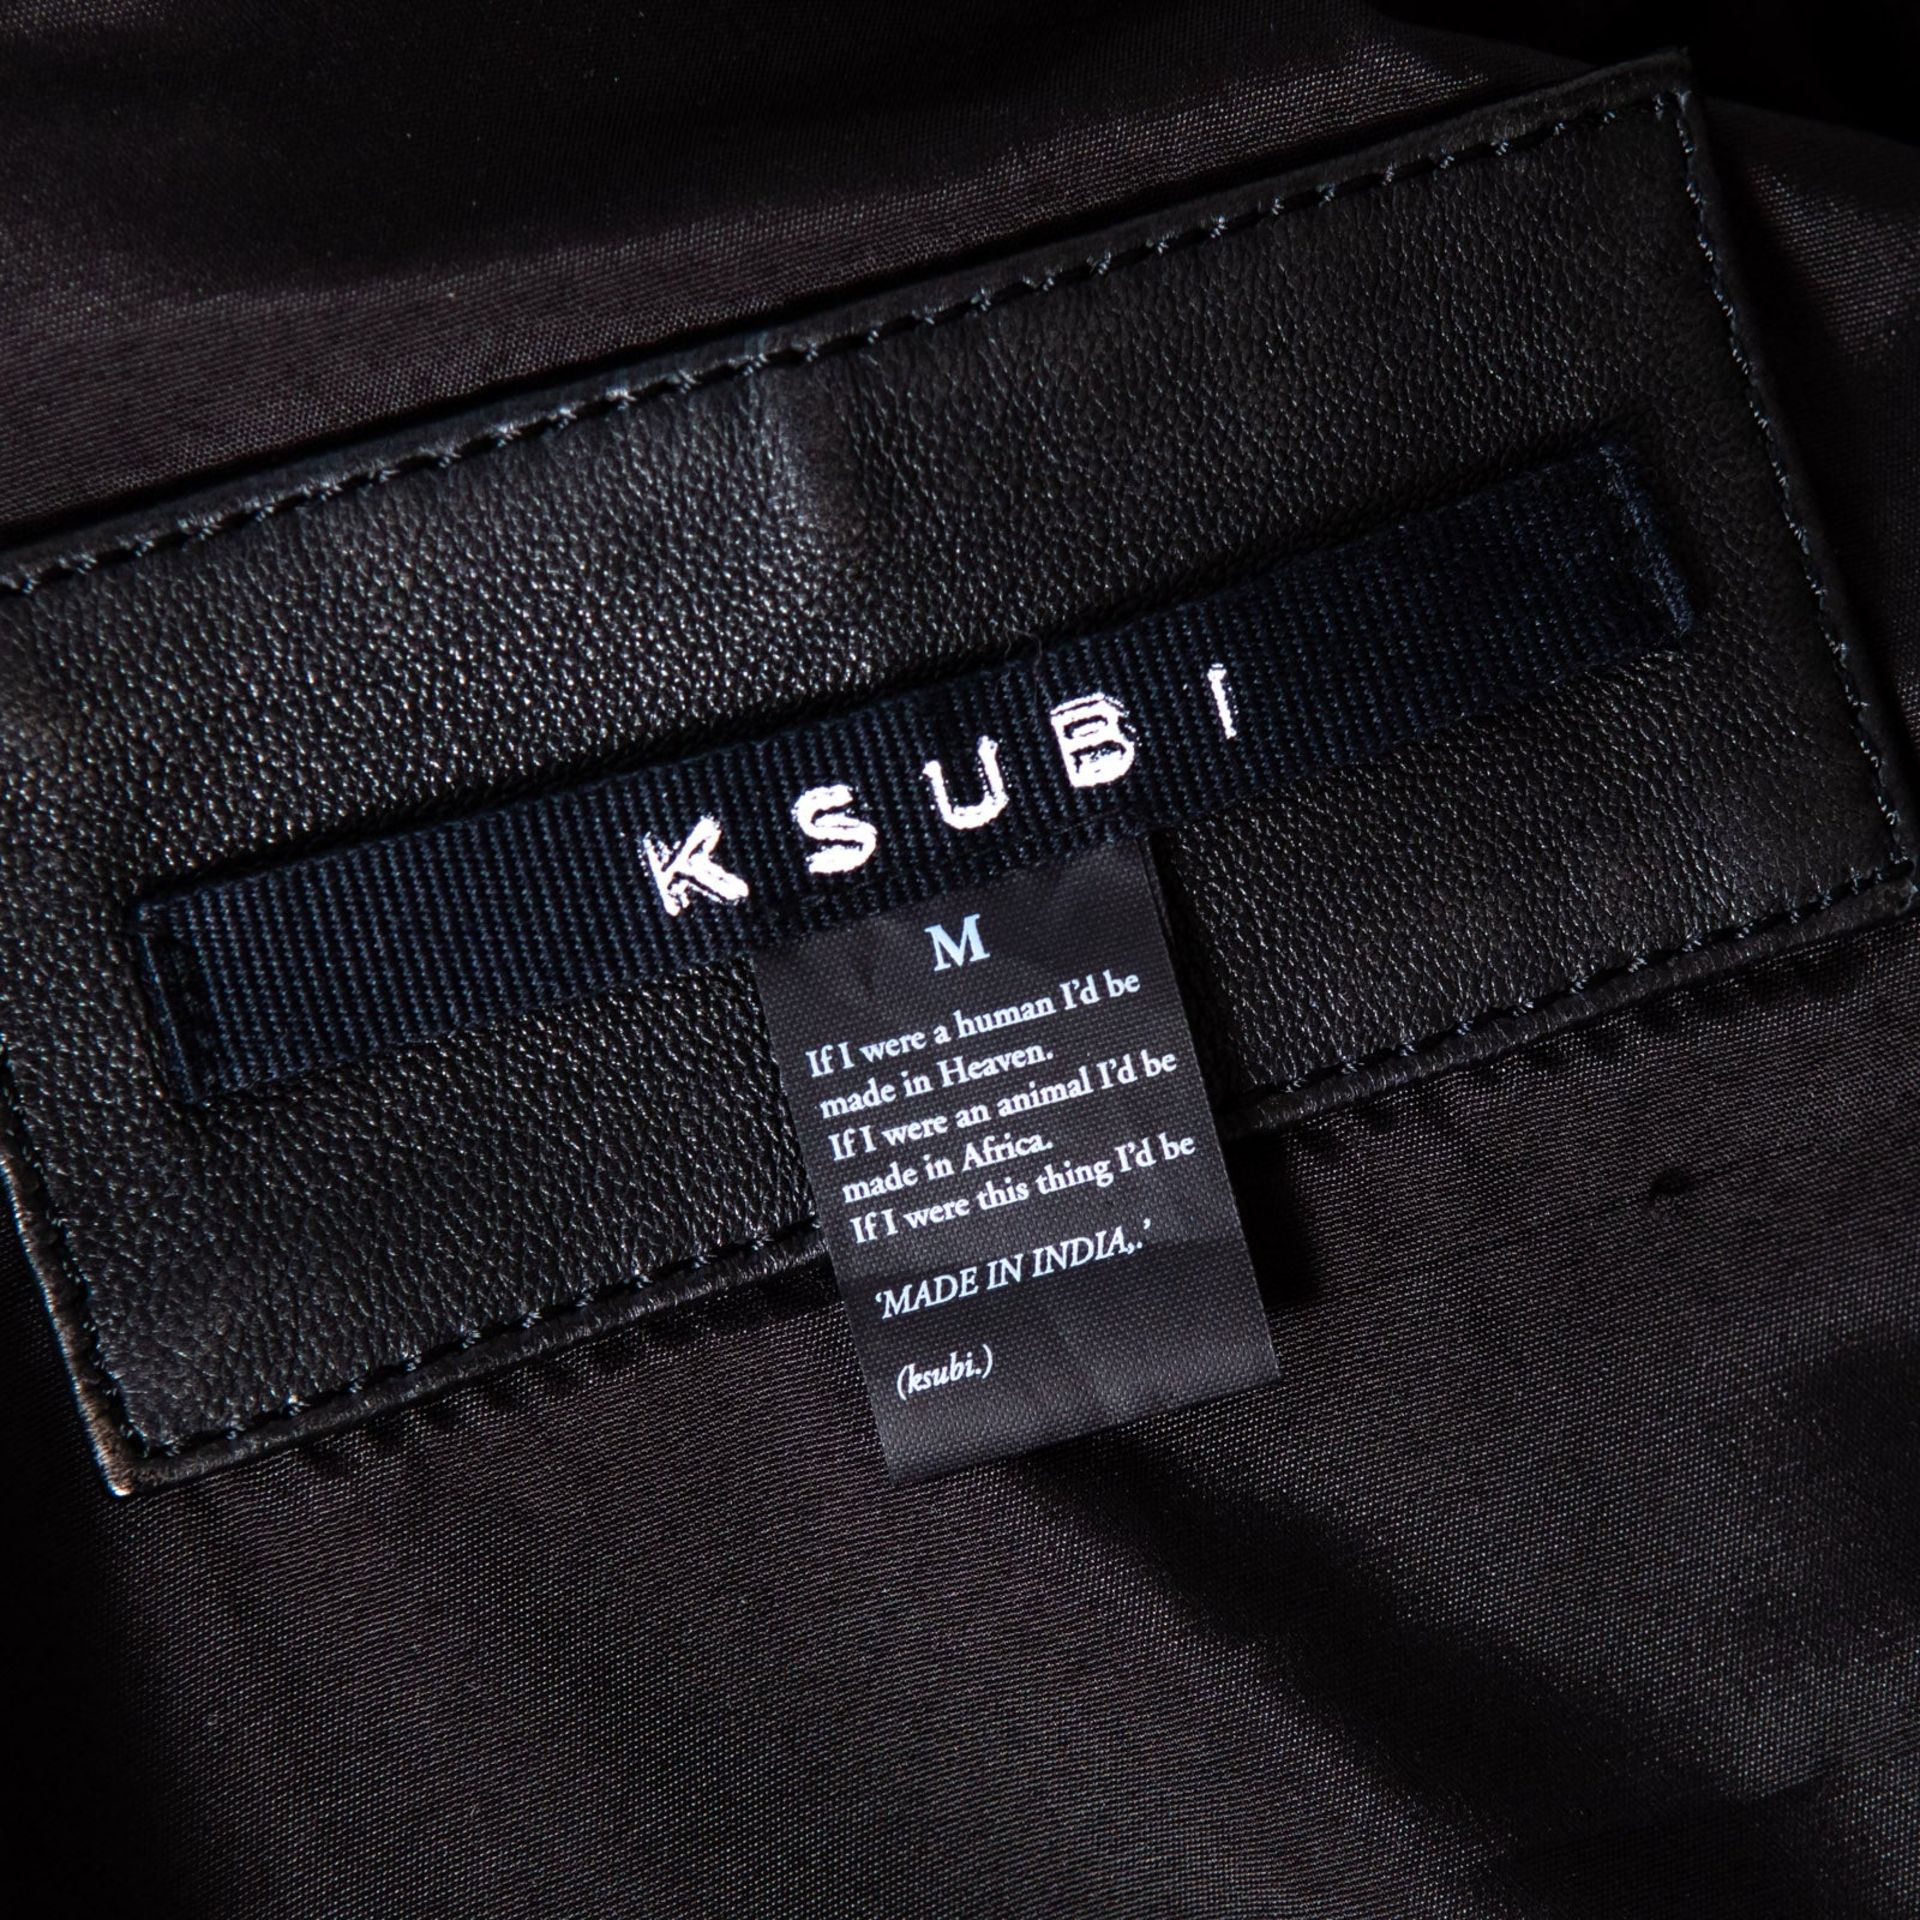 Ksubi Black Leather Biker Jacket Size Medium - Image 5 of 6